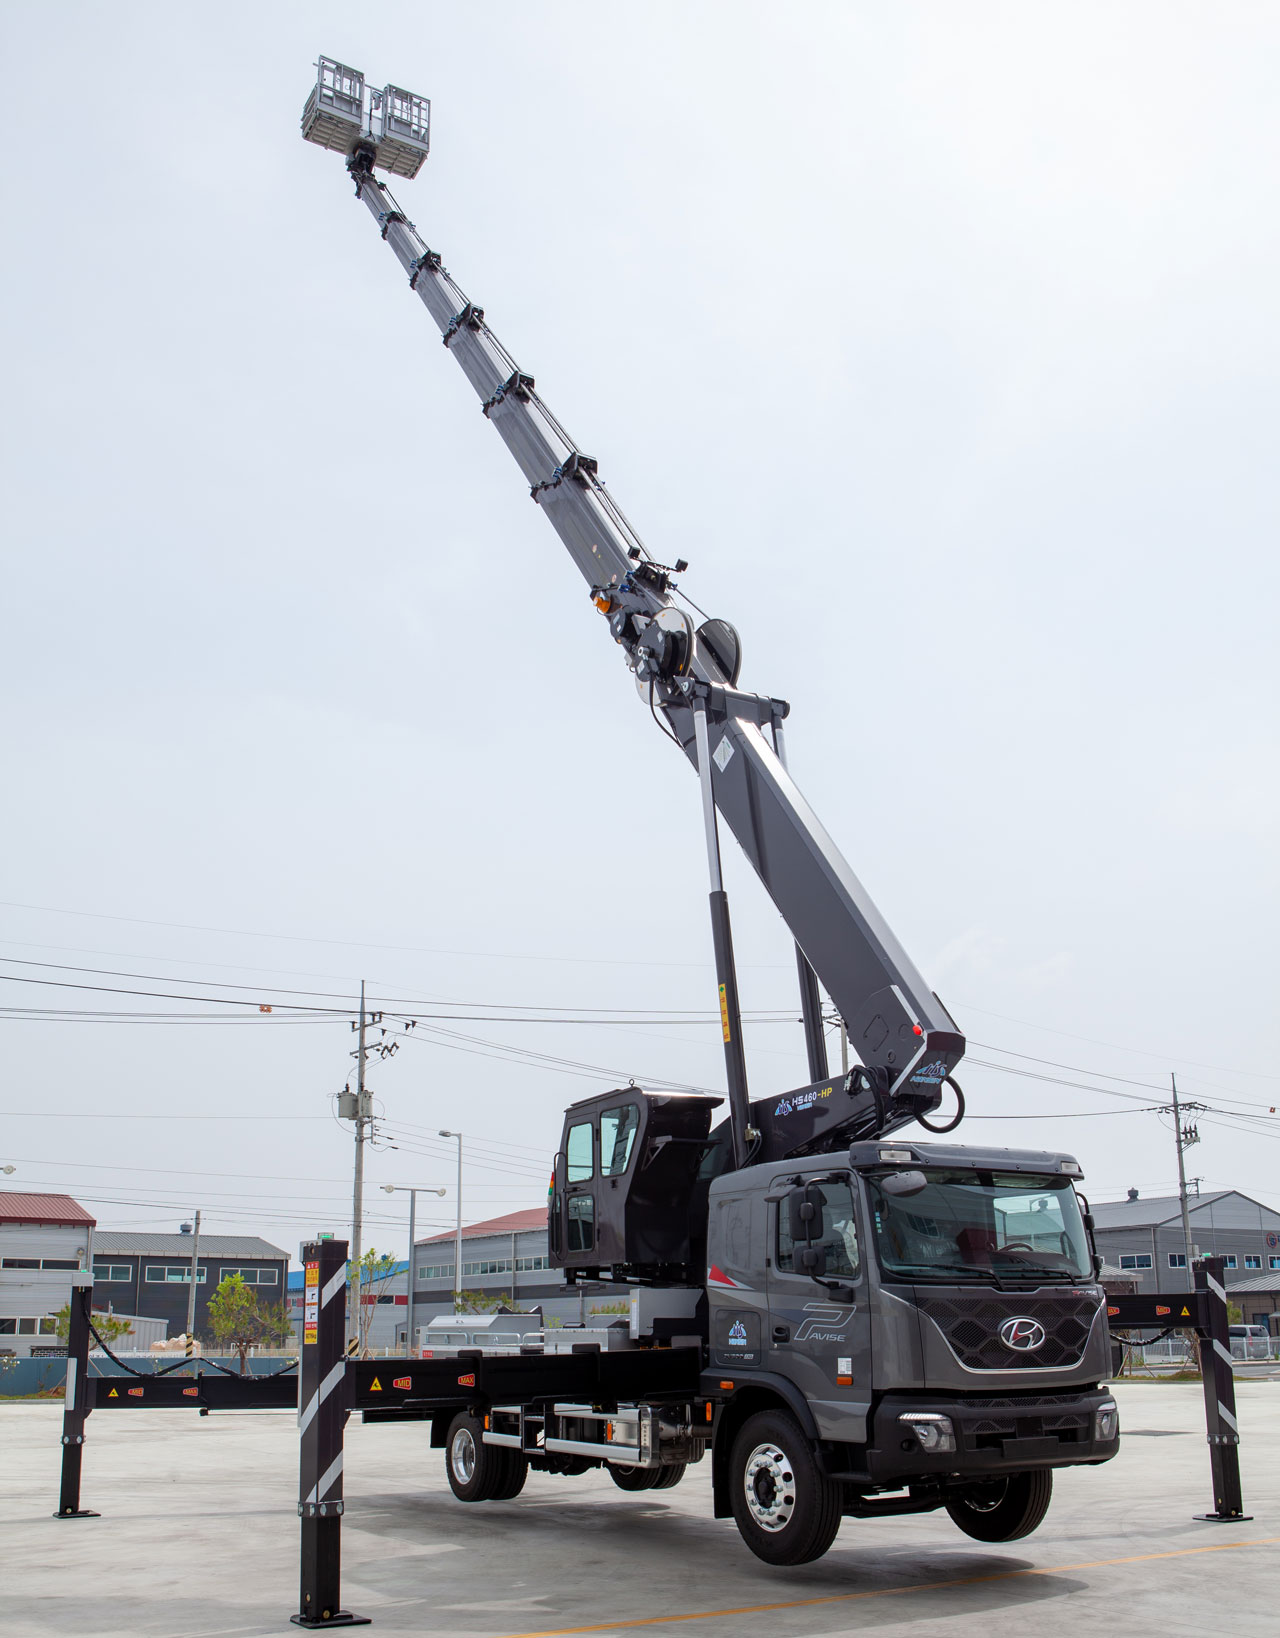 Emelőkosaras teherautó Strenx® szerkezeti acélból készült, nagyon hosszú, az ég felé kinyúló gémje.